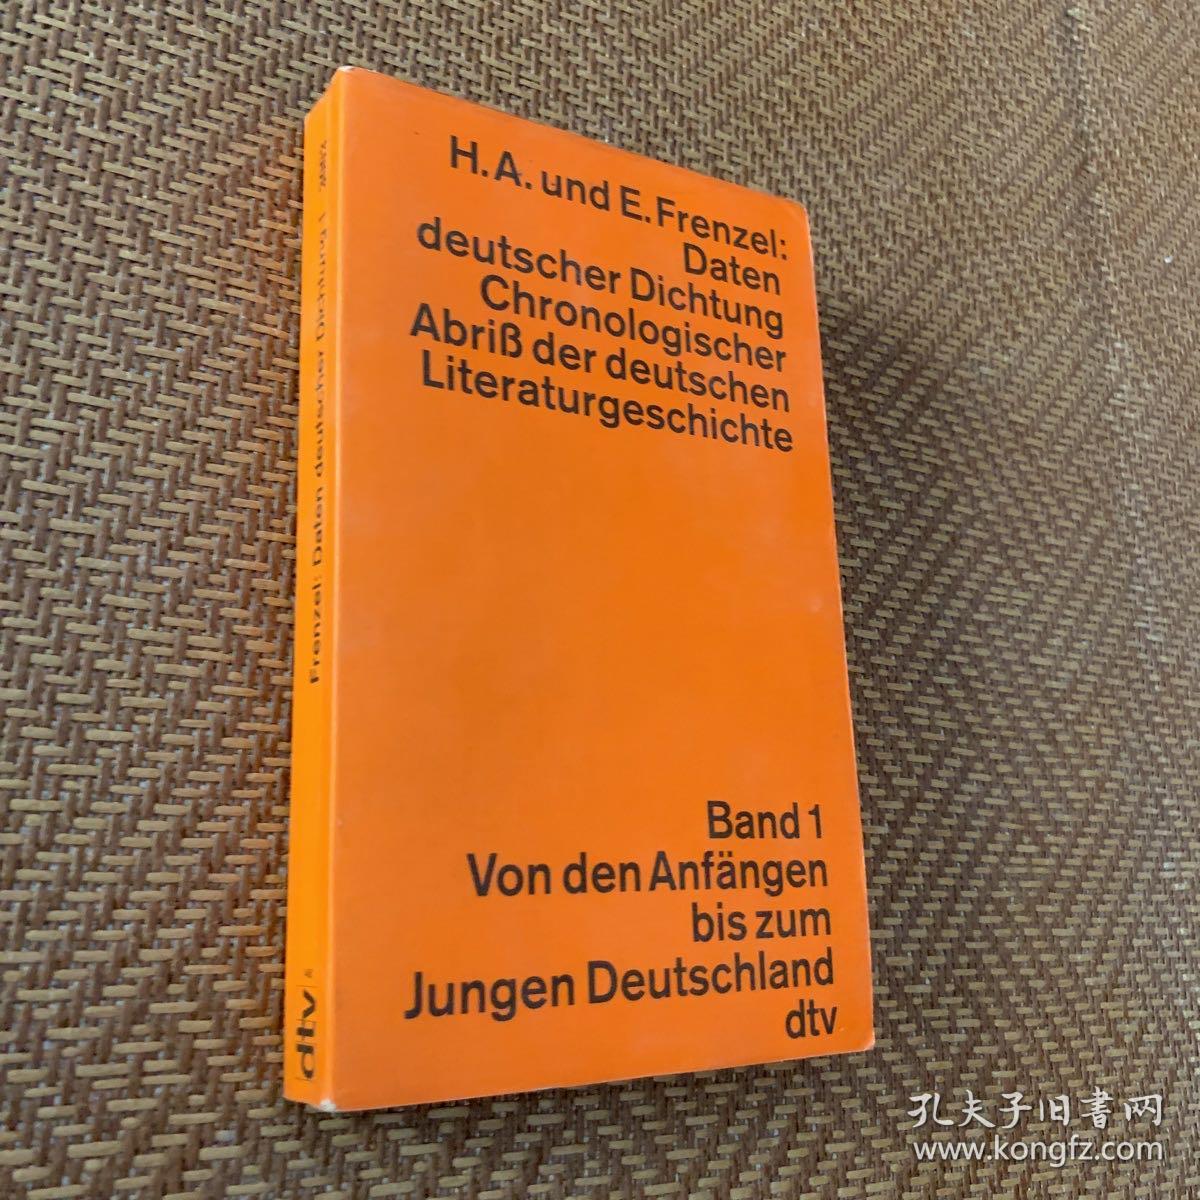 Chronologister Abrith der deutschen Literaturgeschichte